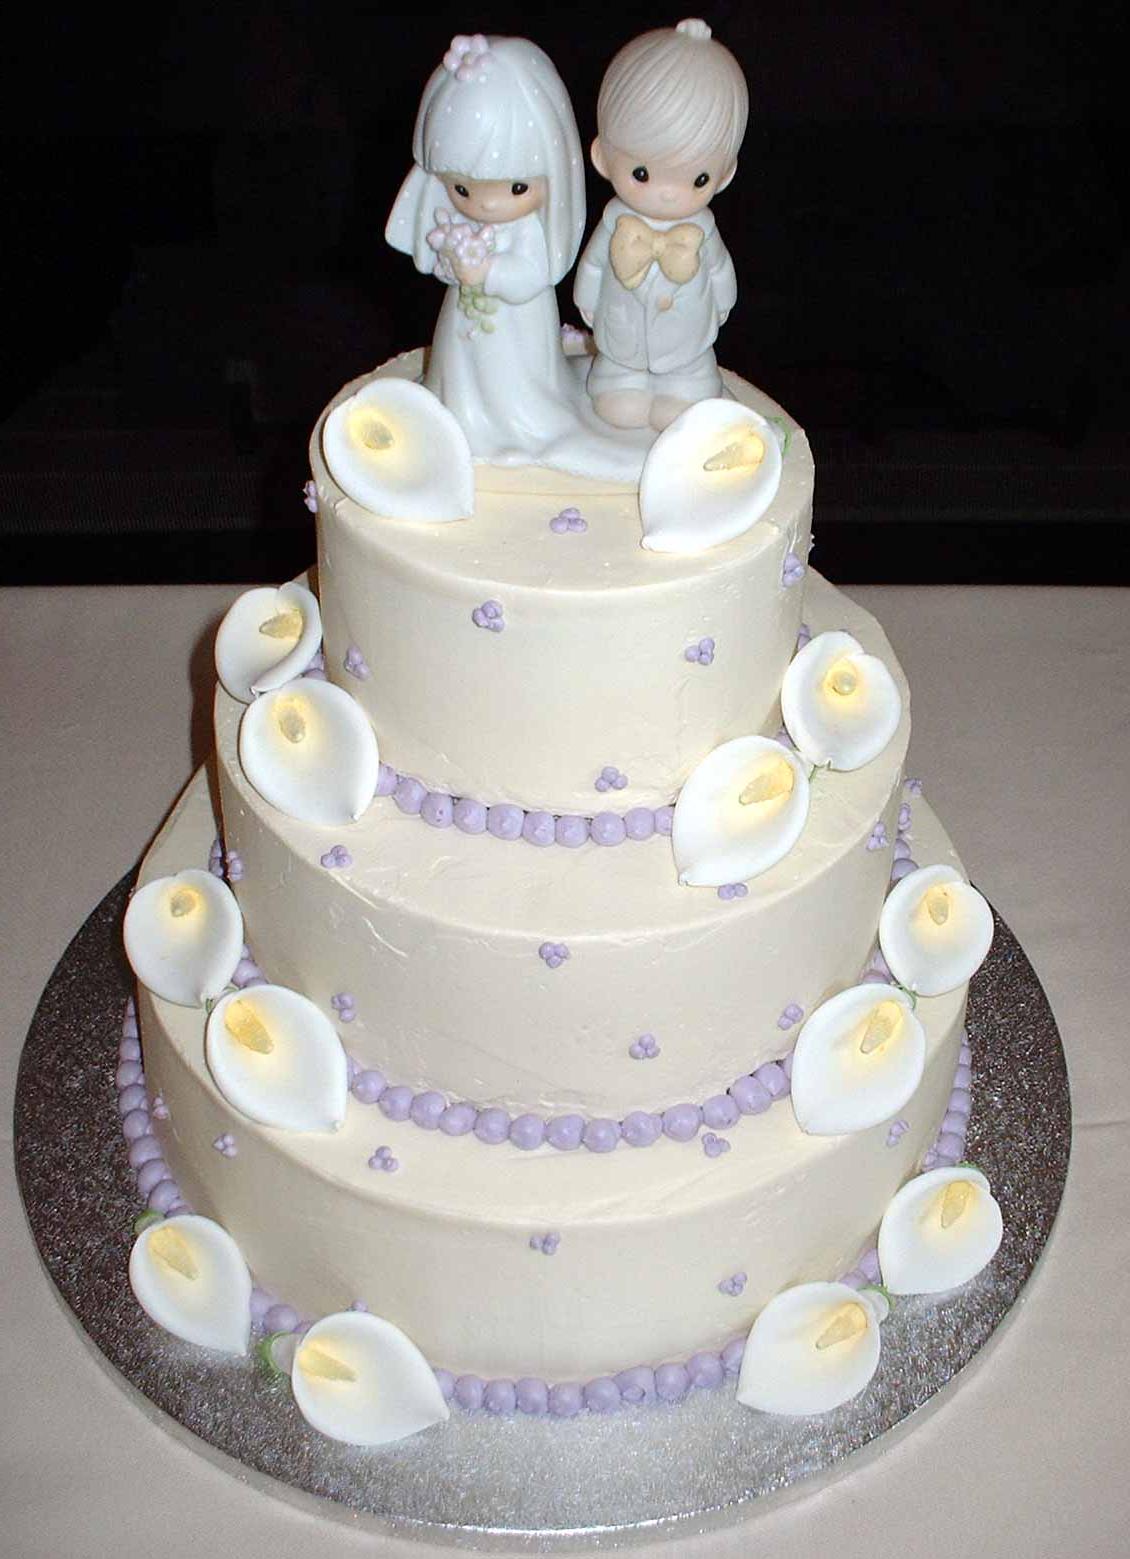 Cute wedding cake ideas